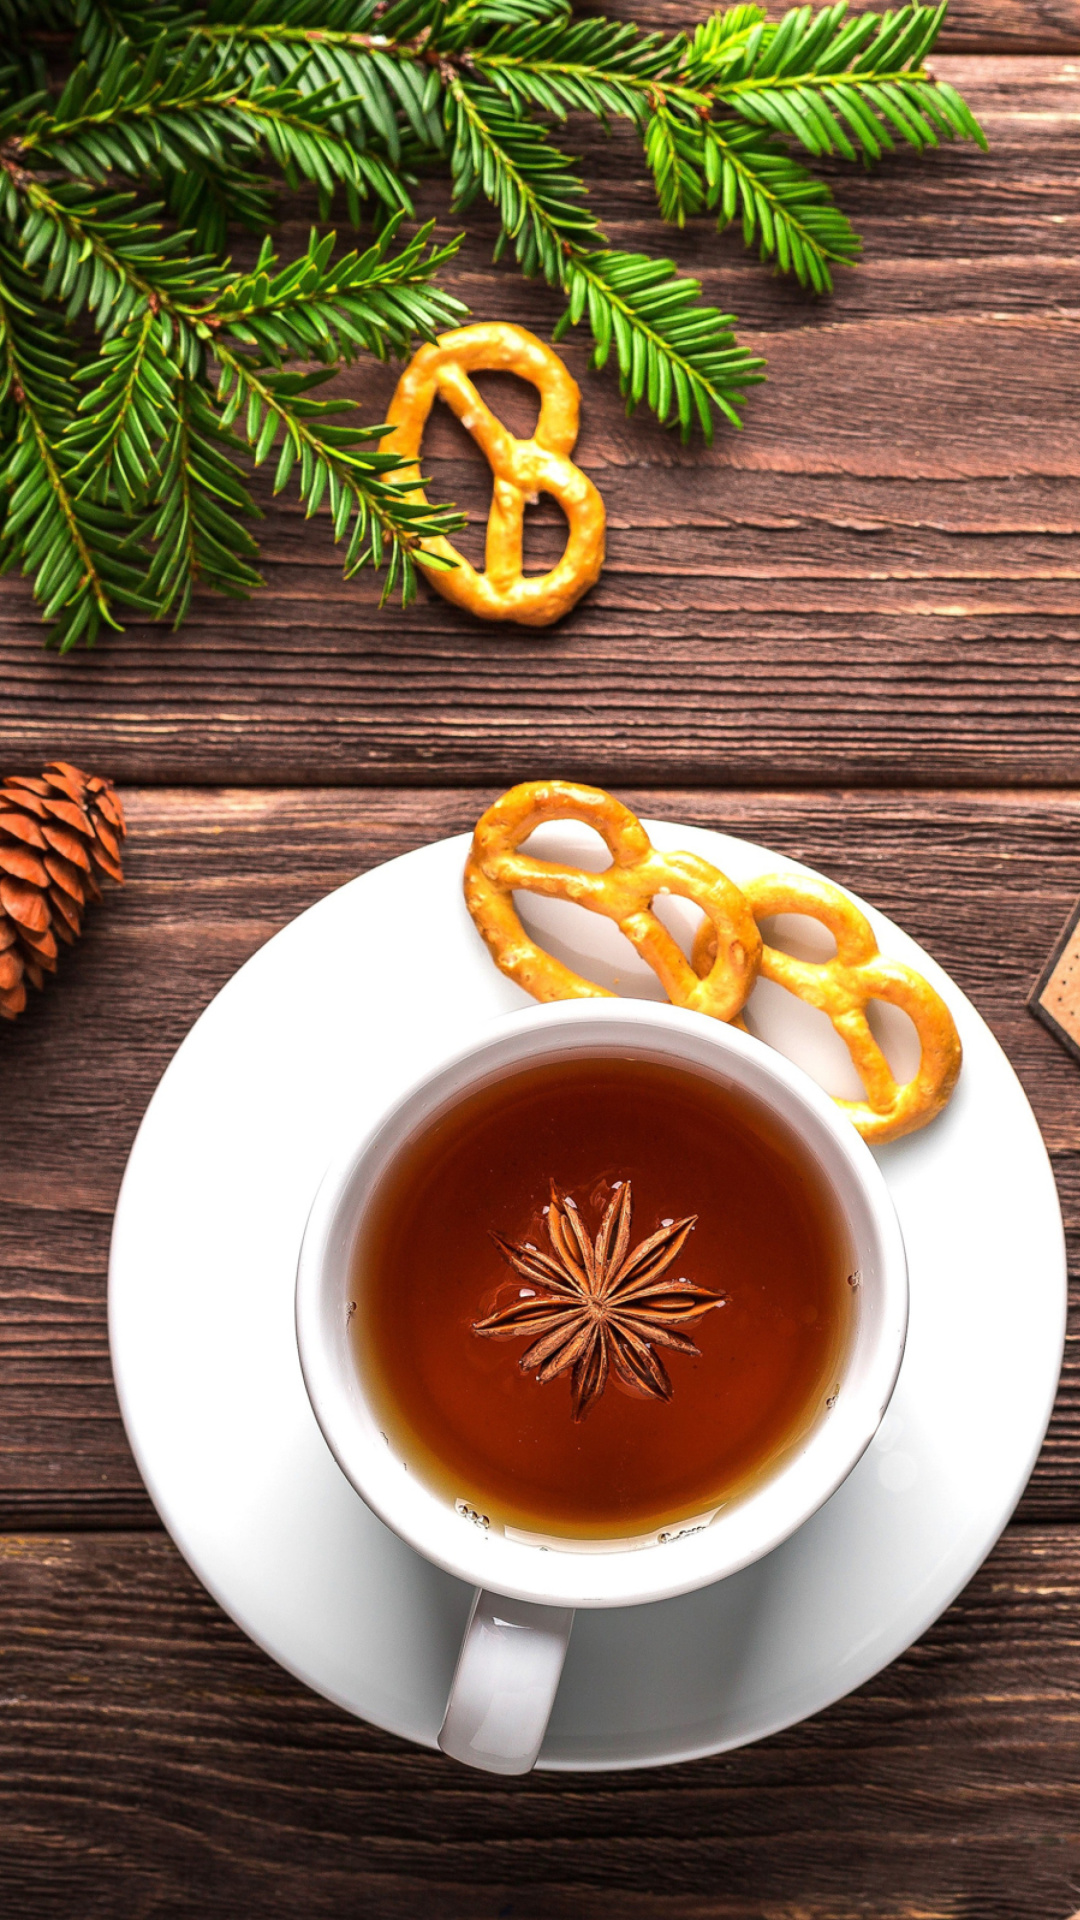 Das Christmas Cup Of Tea Wallpaper 1080x1920